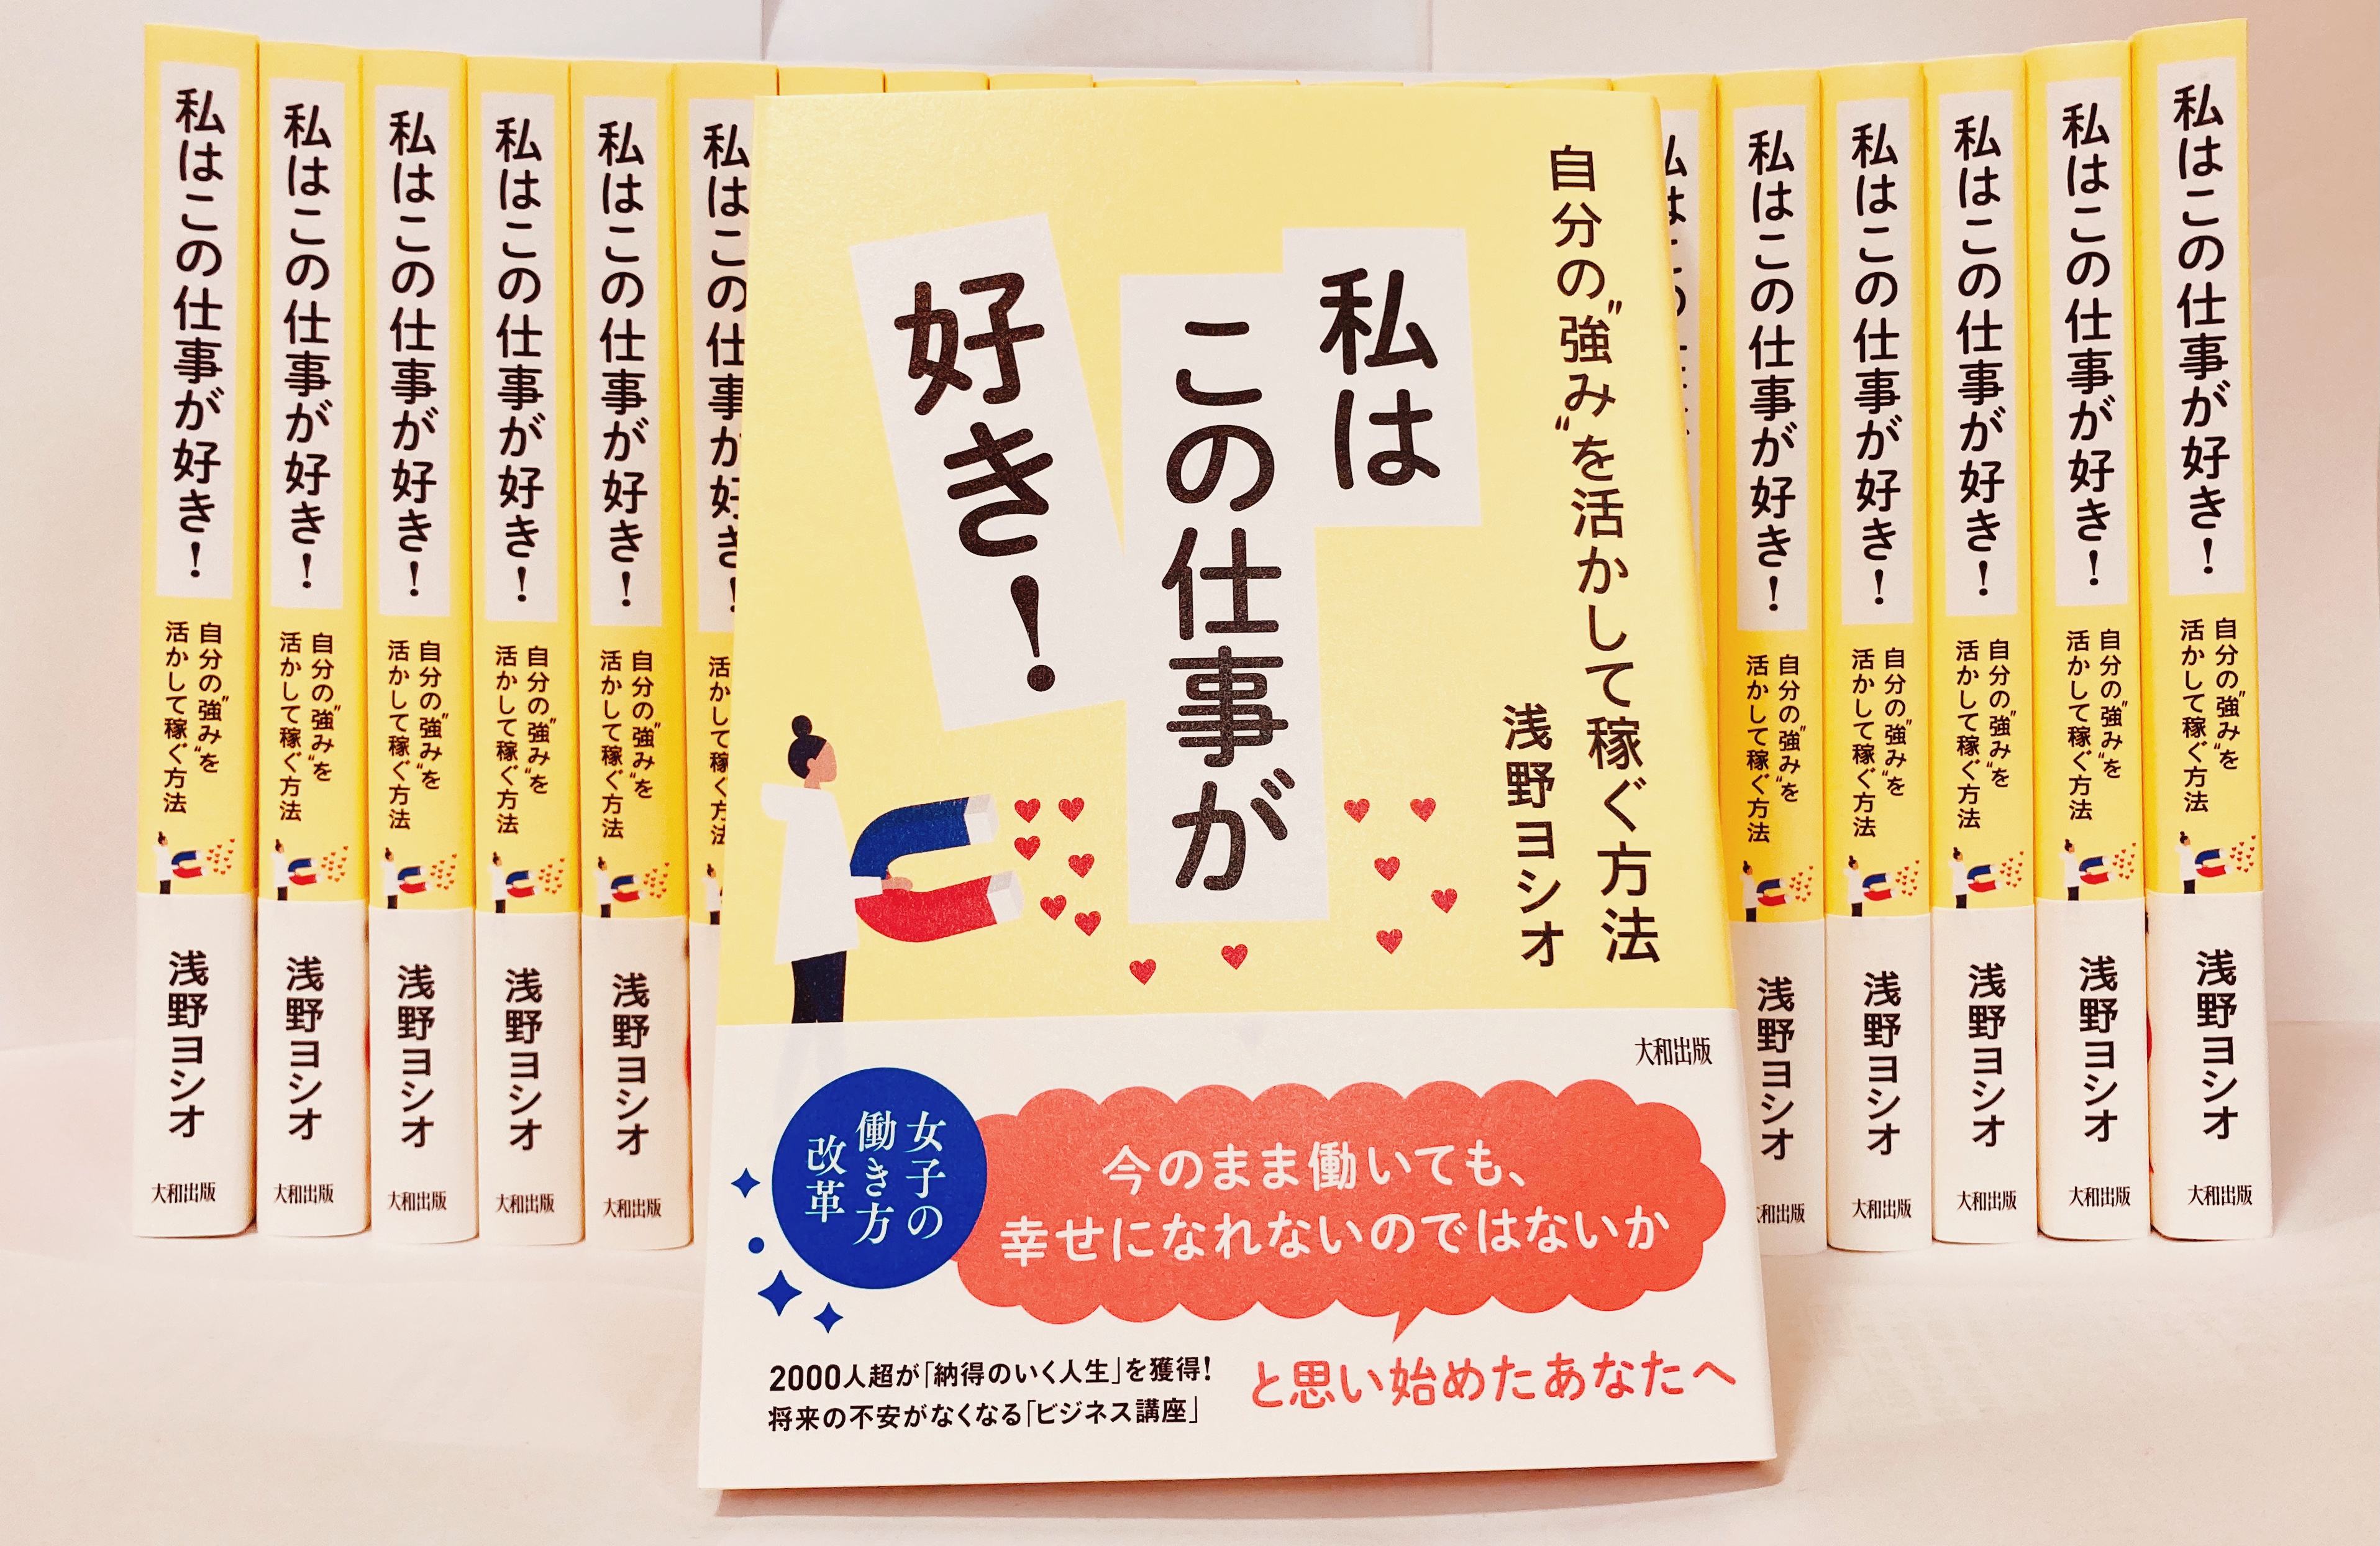 「自分の強みを活かして稼ぐ方法 私はこの仕事が好き!」著者：浅野ヨシオの背表紙が見える状態20冊並べ、その手前に本の表紙が見えるよう立てかけた状態